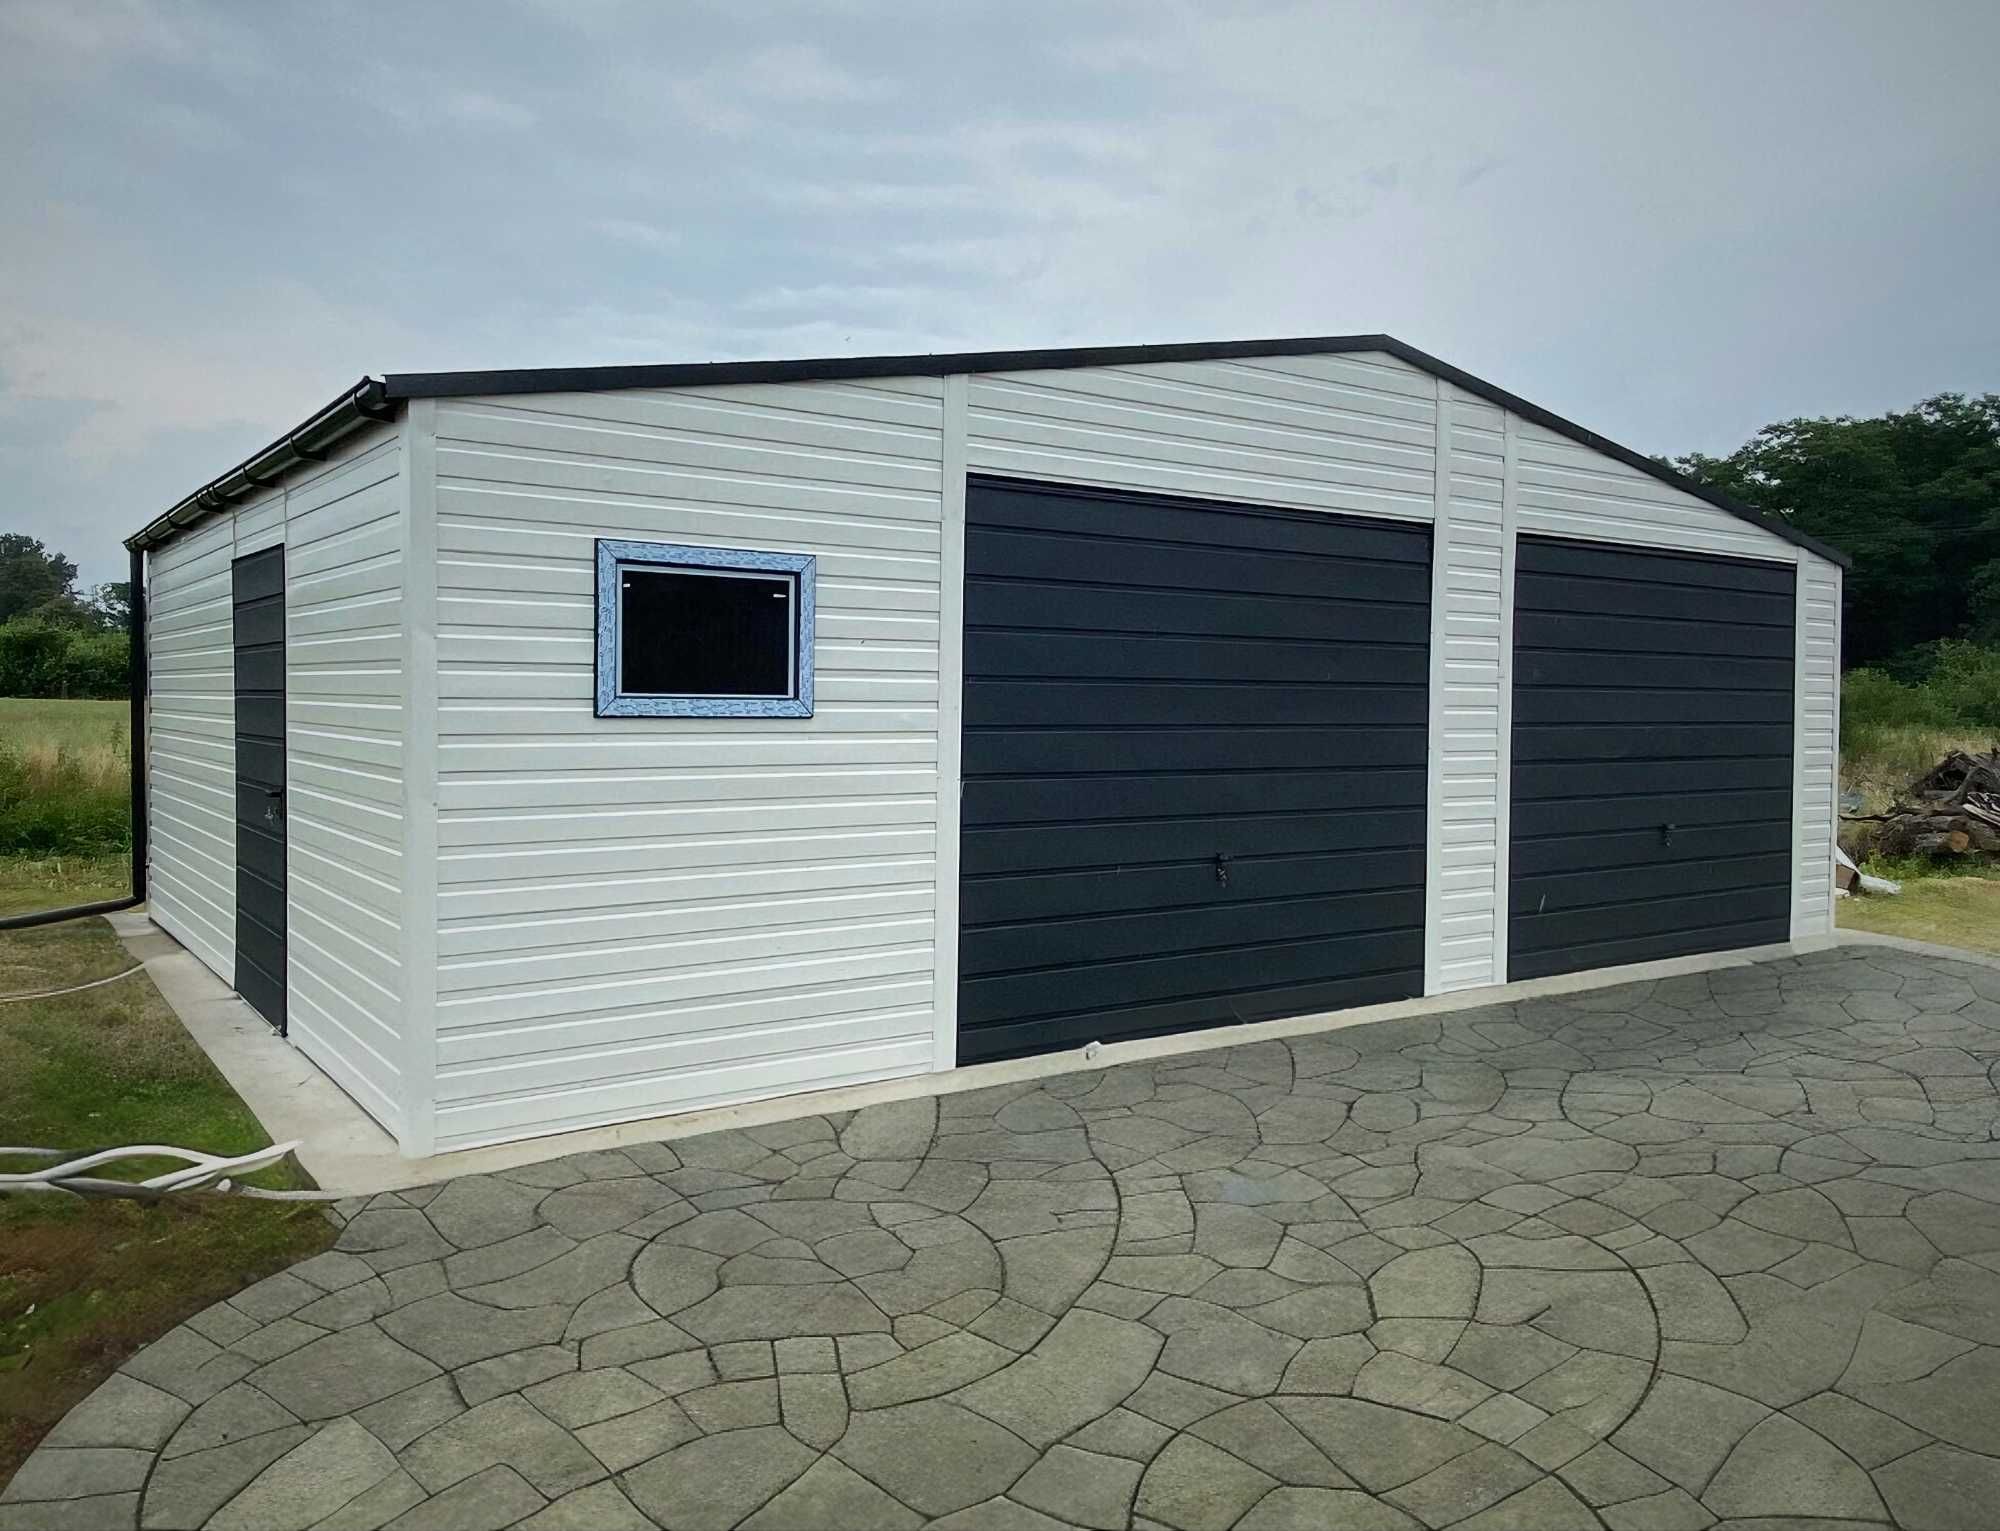 Garaż blaszany ogrodowy biały grafit 9x5m dwustanowiskowy garaz